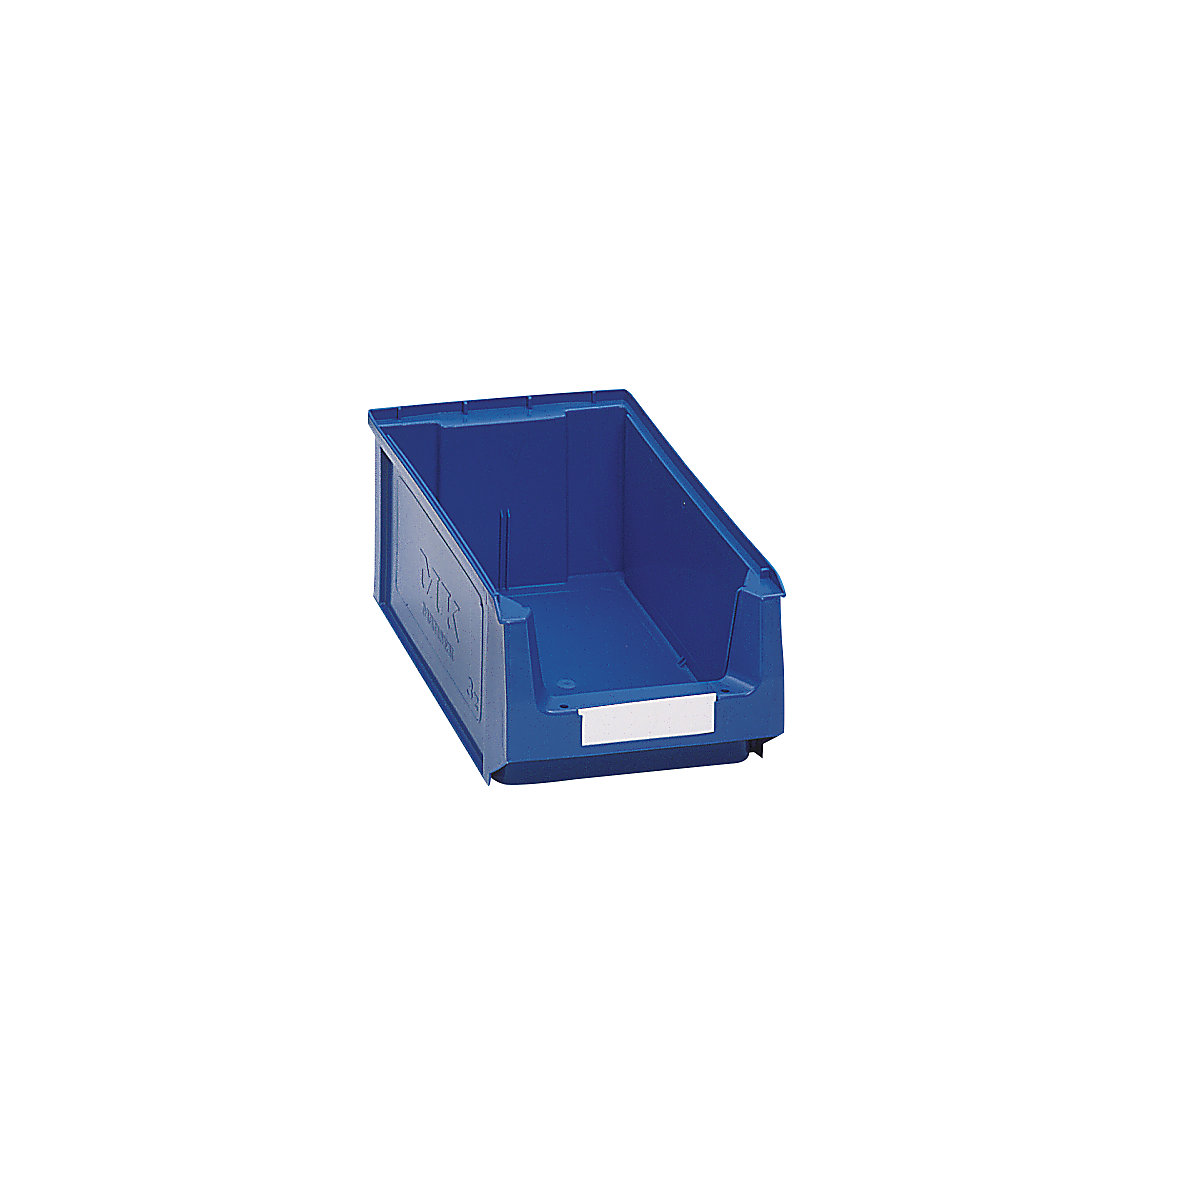 Prepravka s viditeľným obsahom z polyetylénu – mauser, d x š x v 350 x 210 x 140 mm, modrá, OJ 14 ks-6